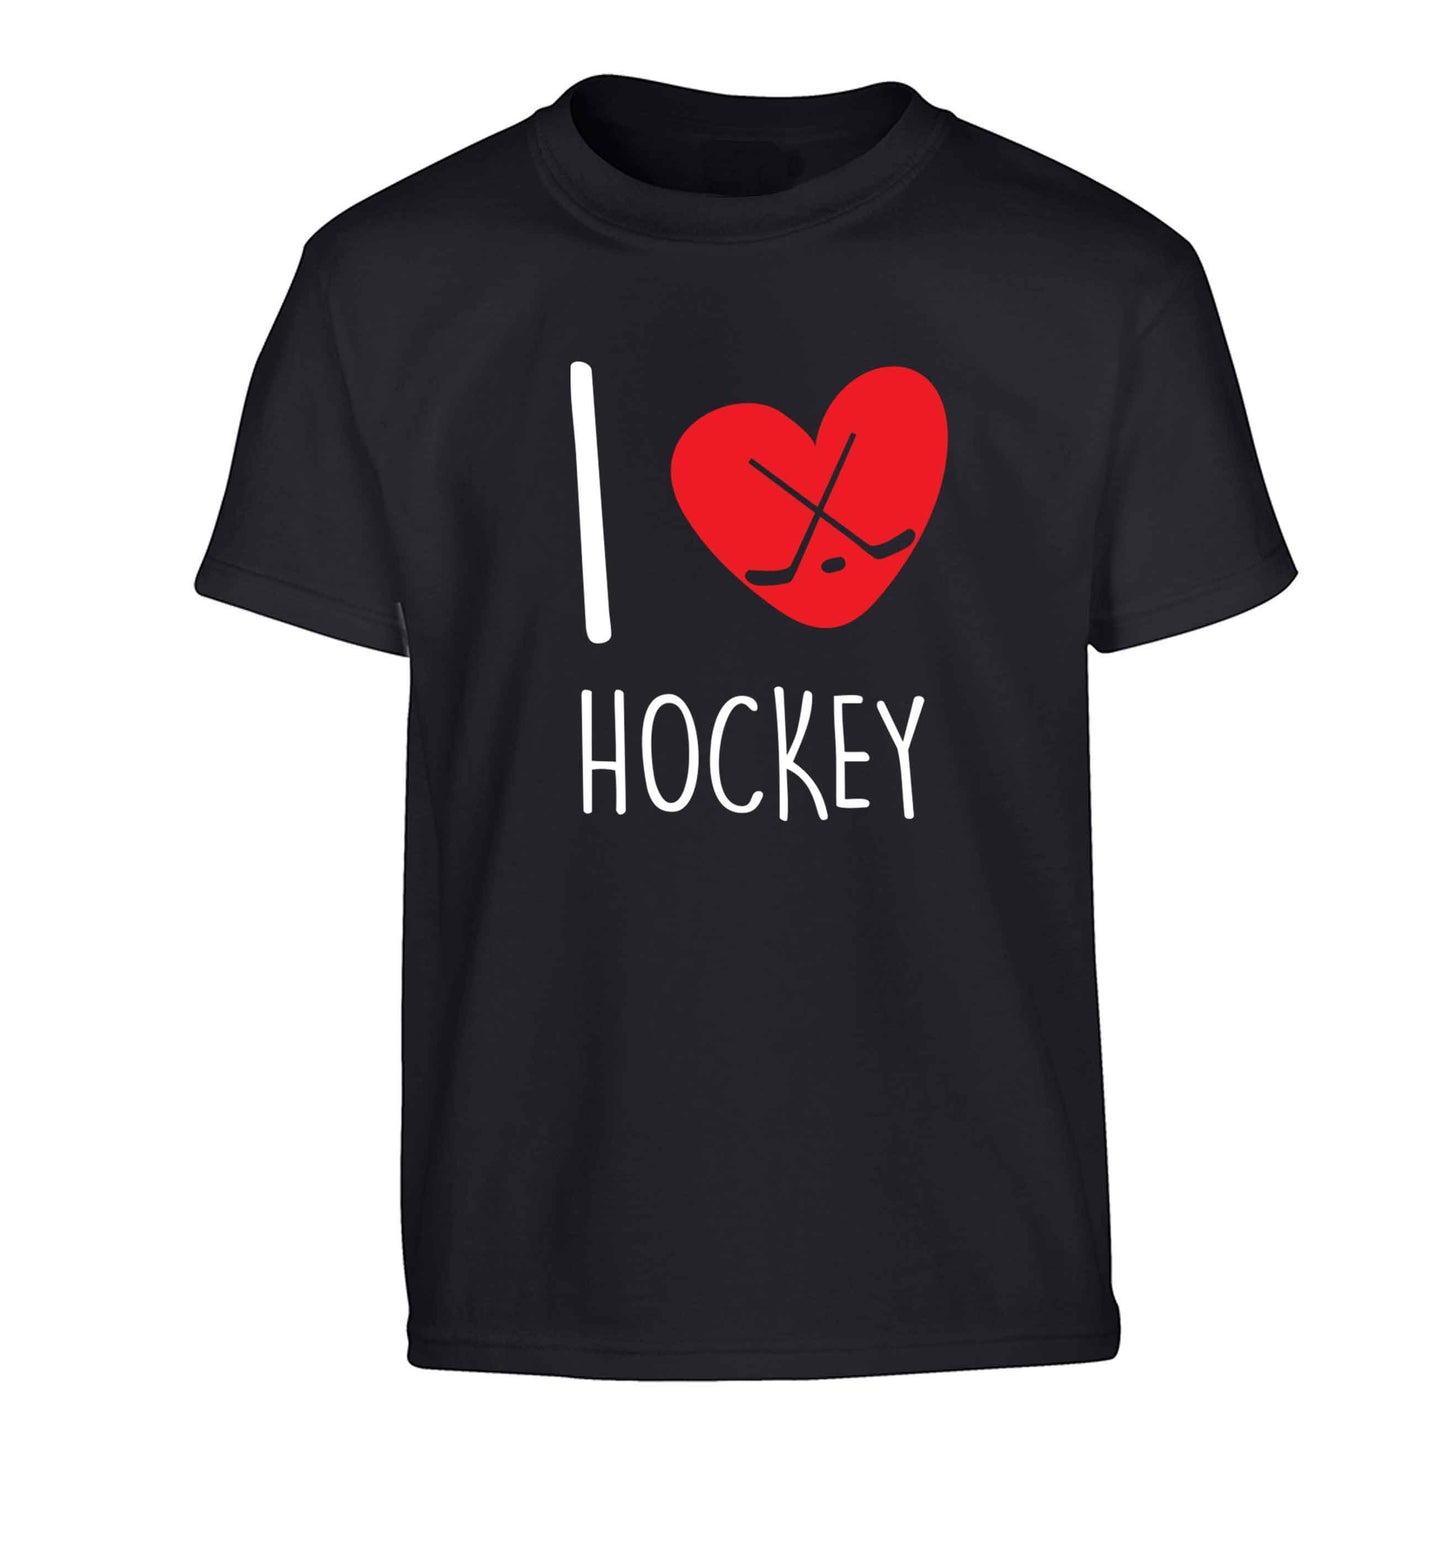 I love hockey Children's black Tshirt 12-13 Years